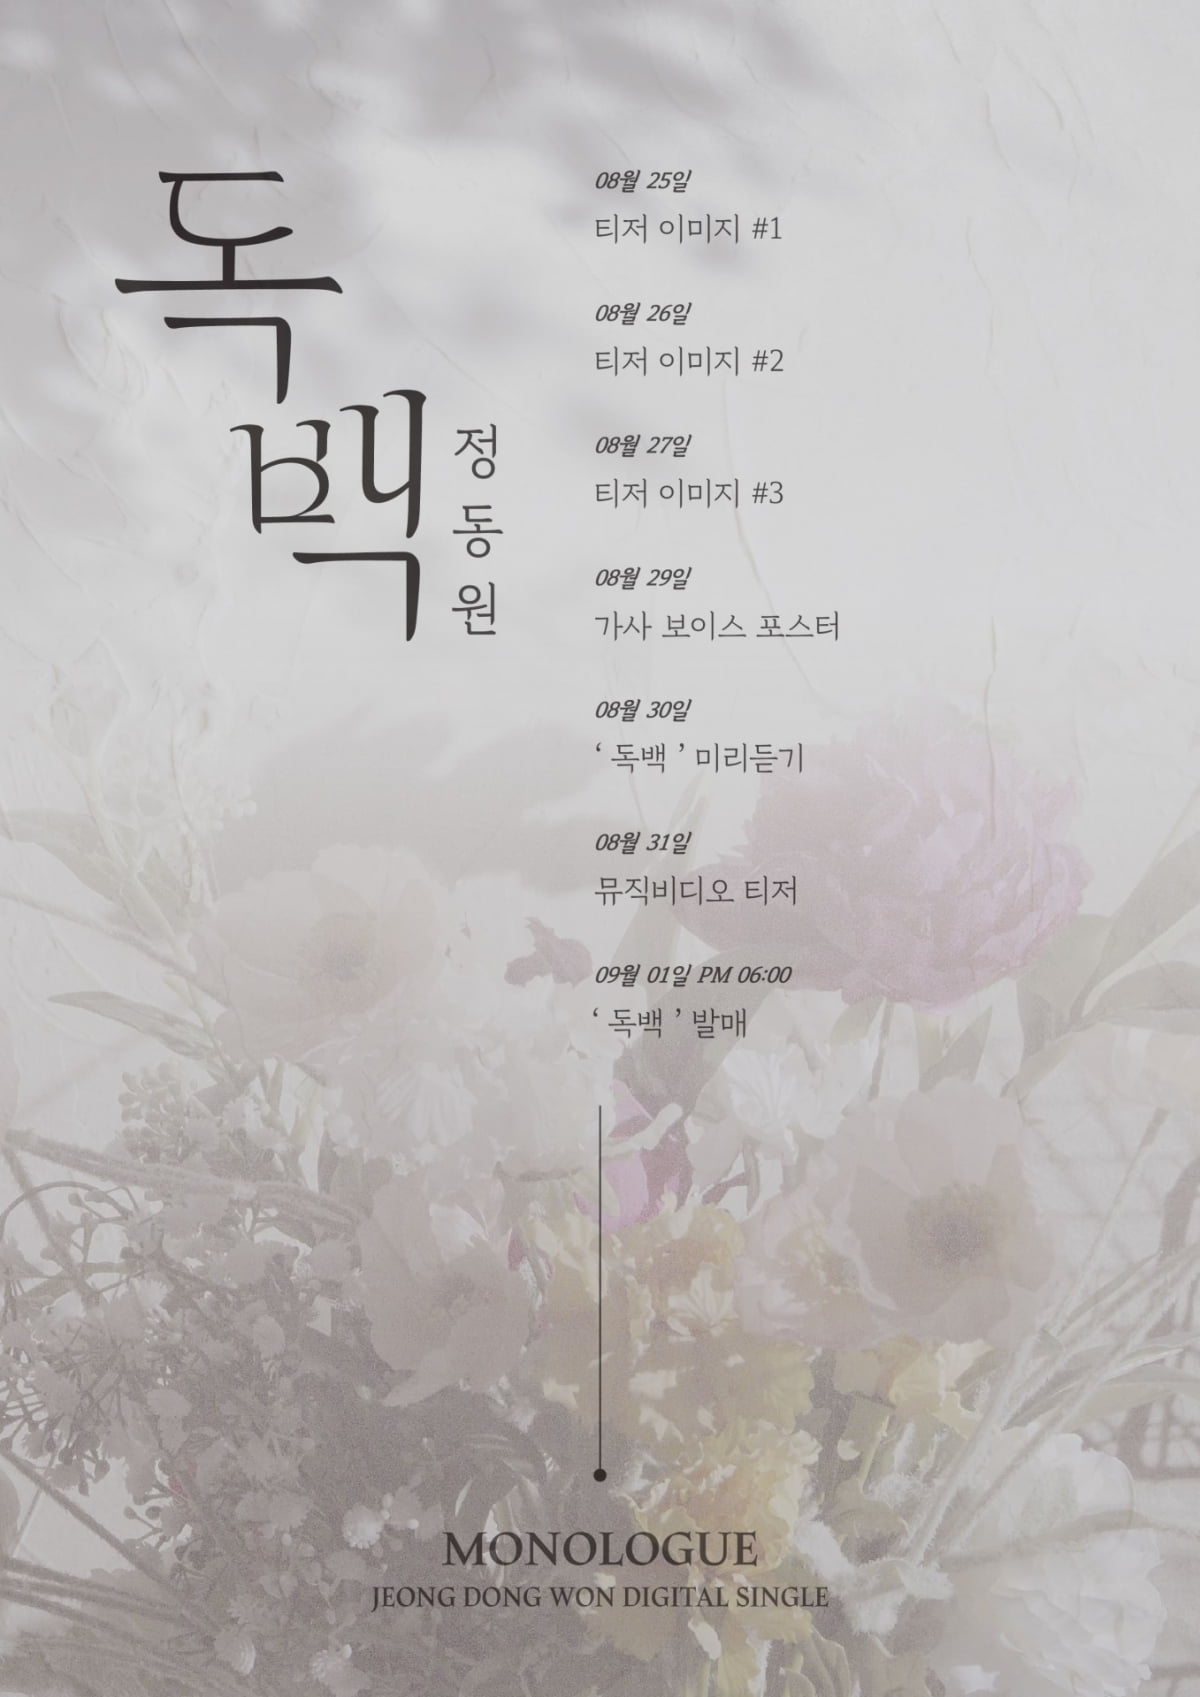 정동원, 9월 1일 발매 신곡 ‘독백’ 프로모션 타임테이블 공개